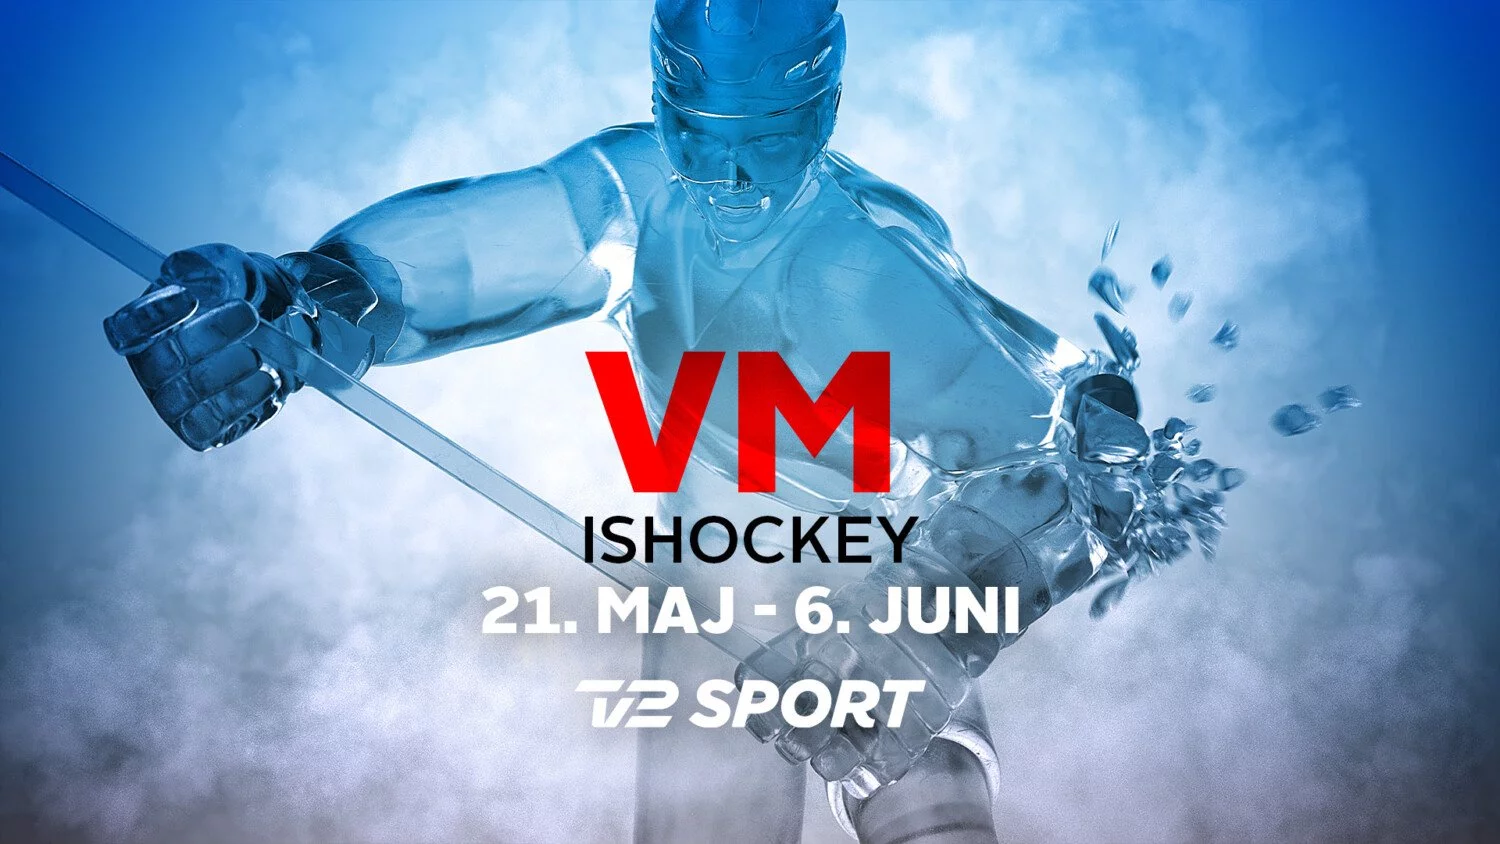 Ishockey VM 2021 TV Streaming